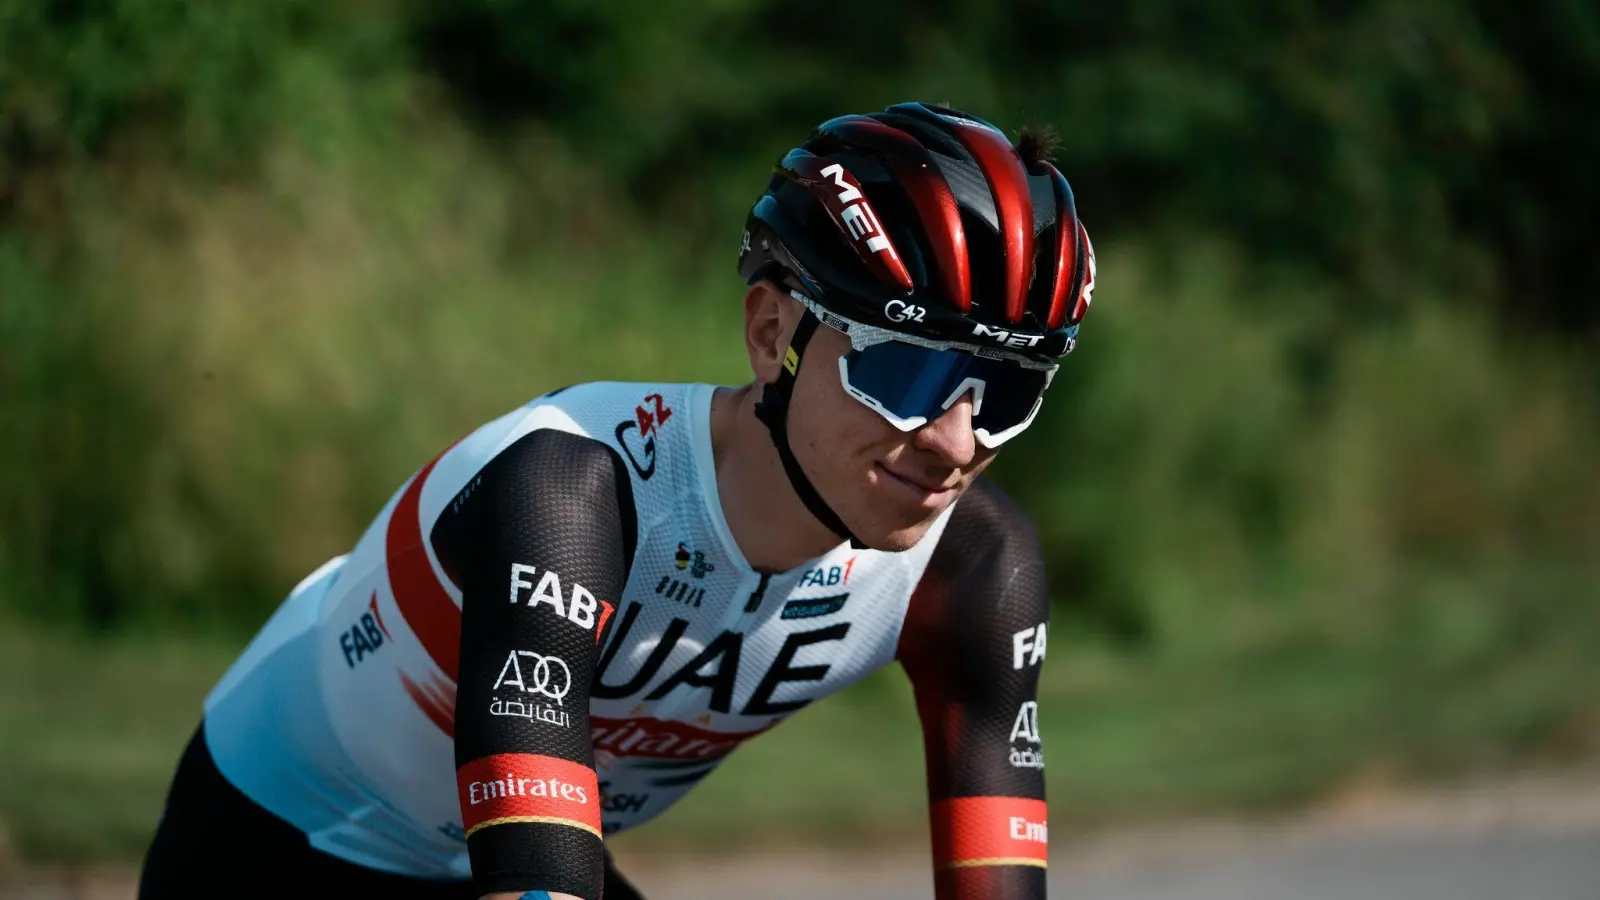 Der Slowene Tadej Pogacar vom Team UAE geht als Titelverteidiger in die Tour de France. (Foto: Thibault Camus/AP/dpa)